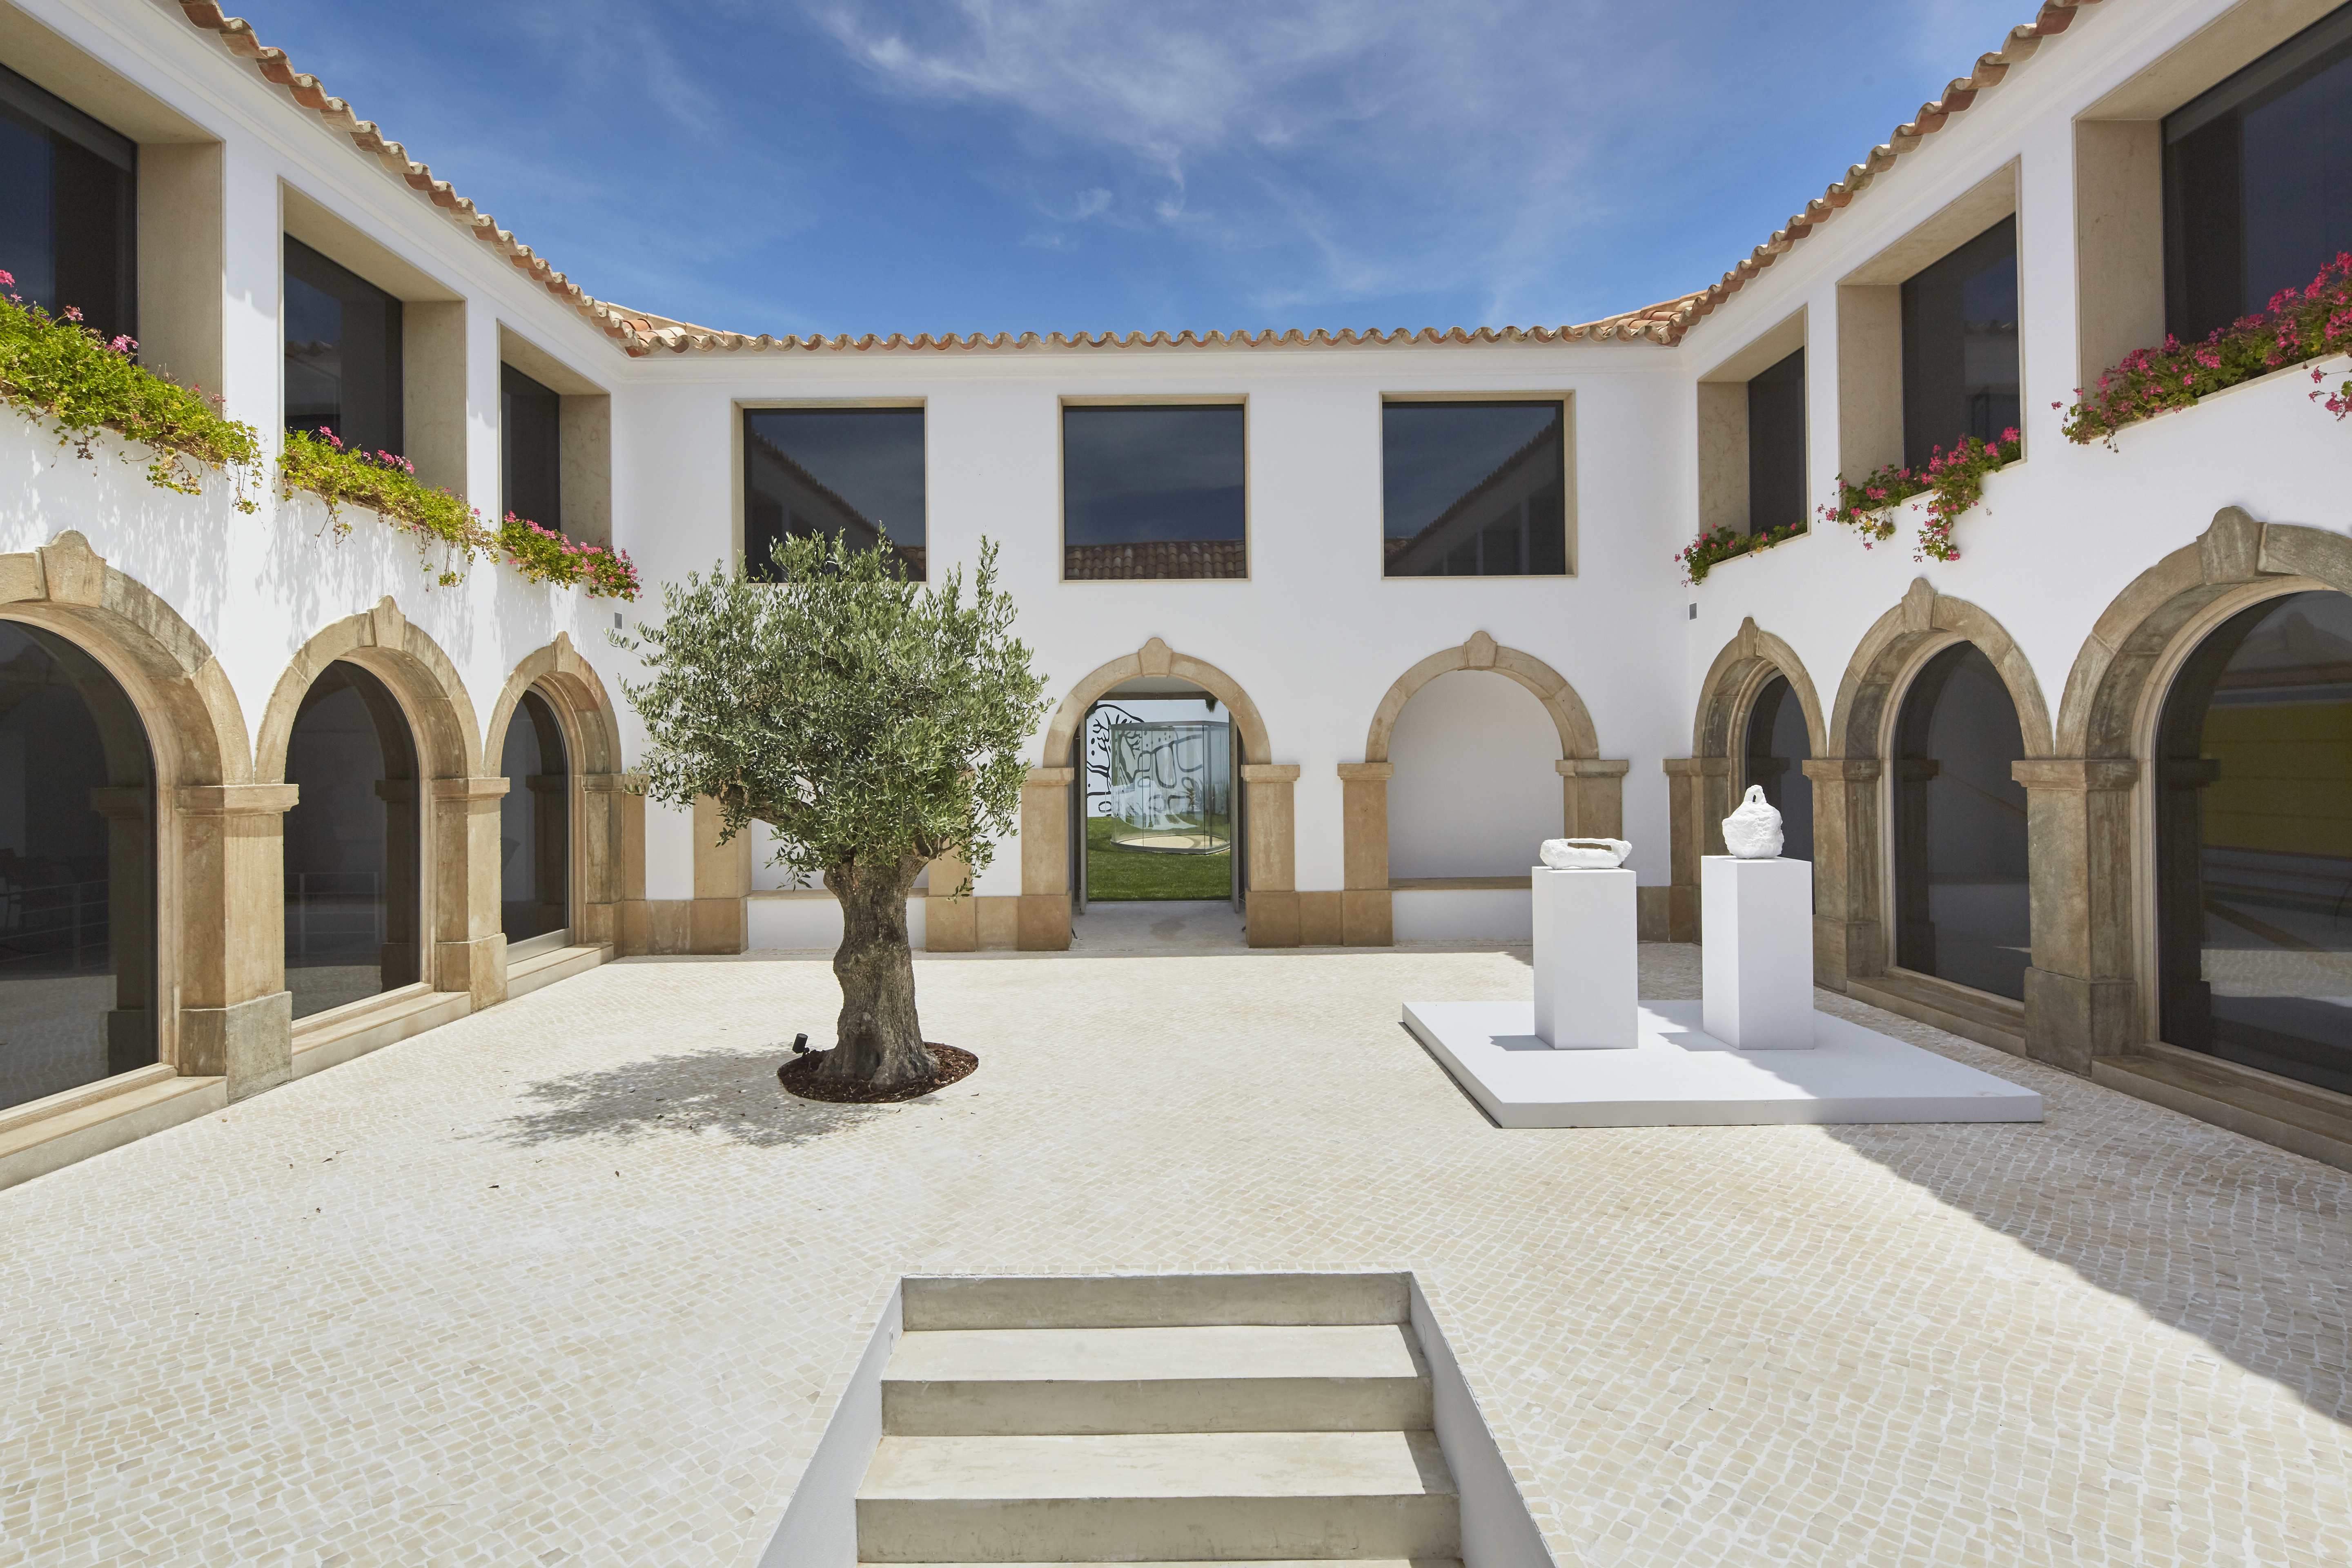 H3A5759 r La casa perfecta para un coleccionista en Portugal fue intervenida por un arquitecto colombiano